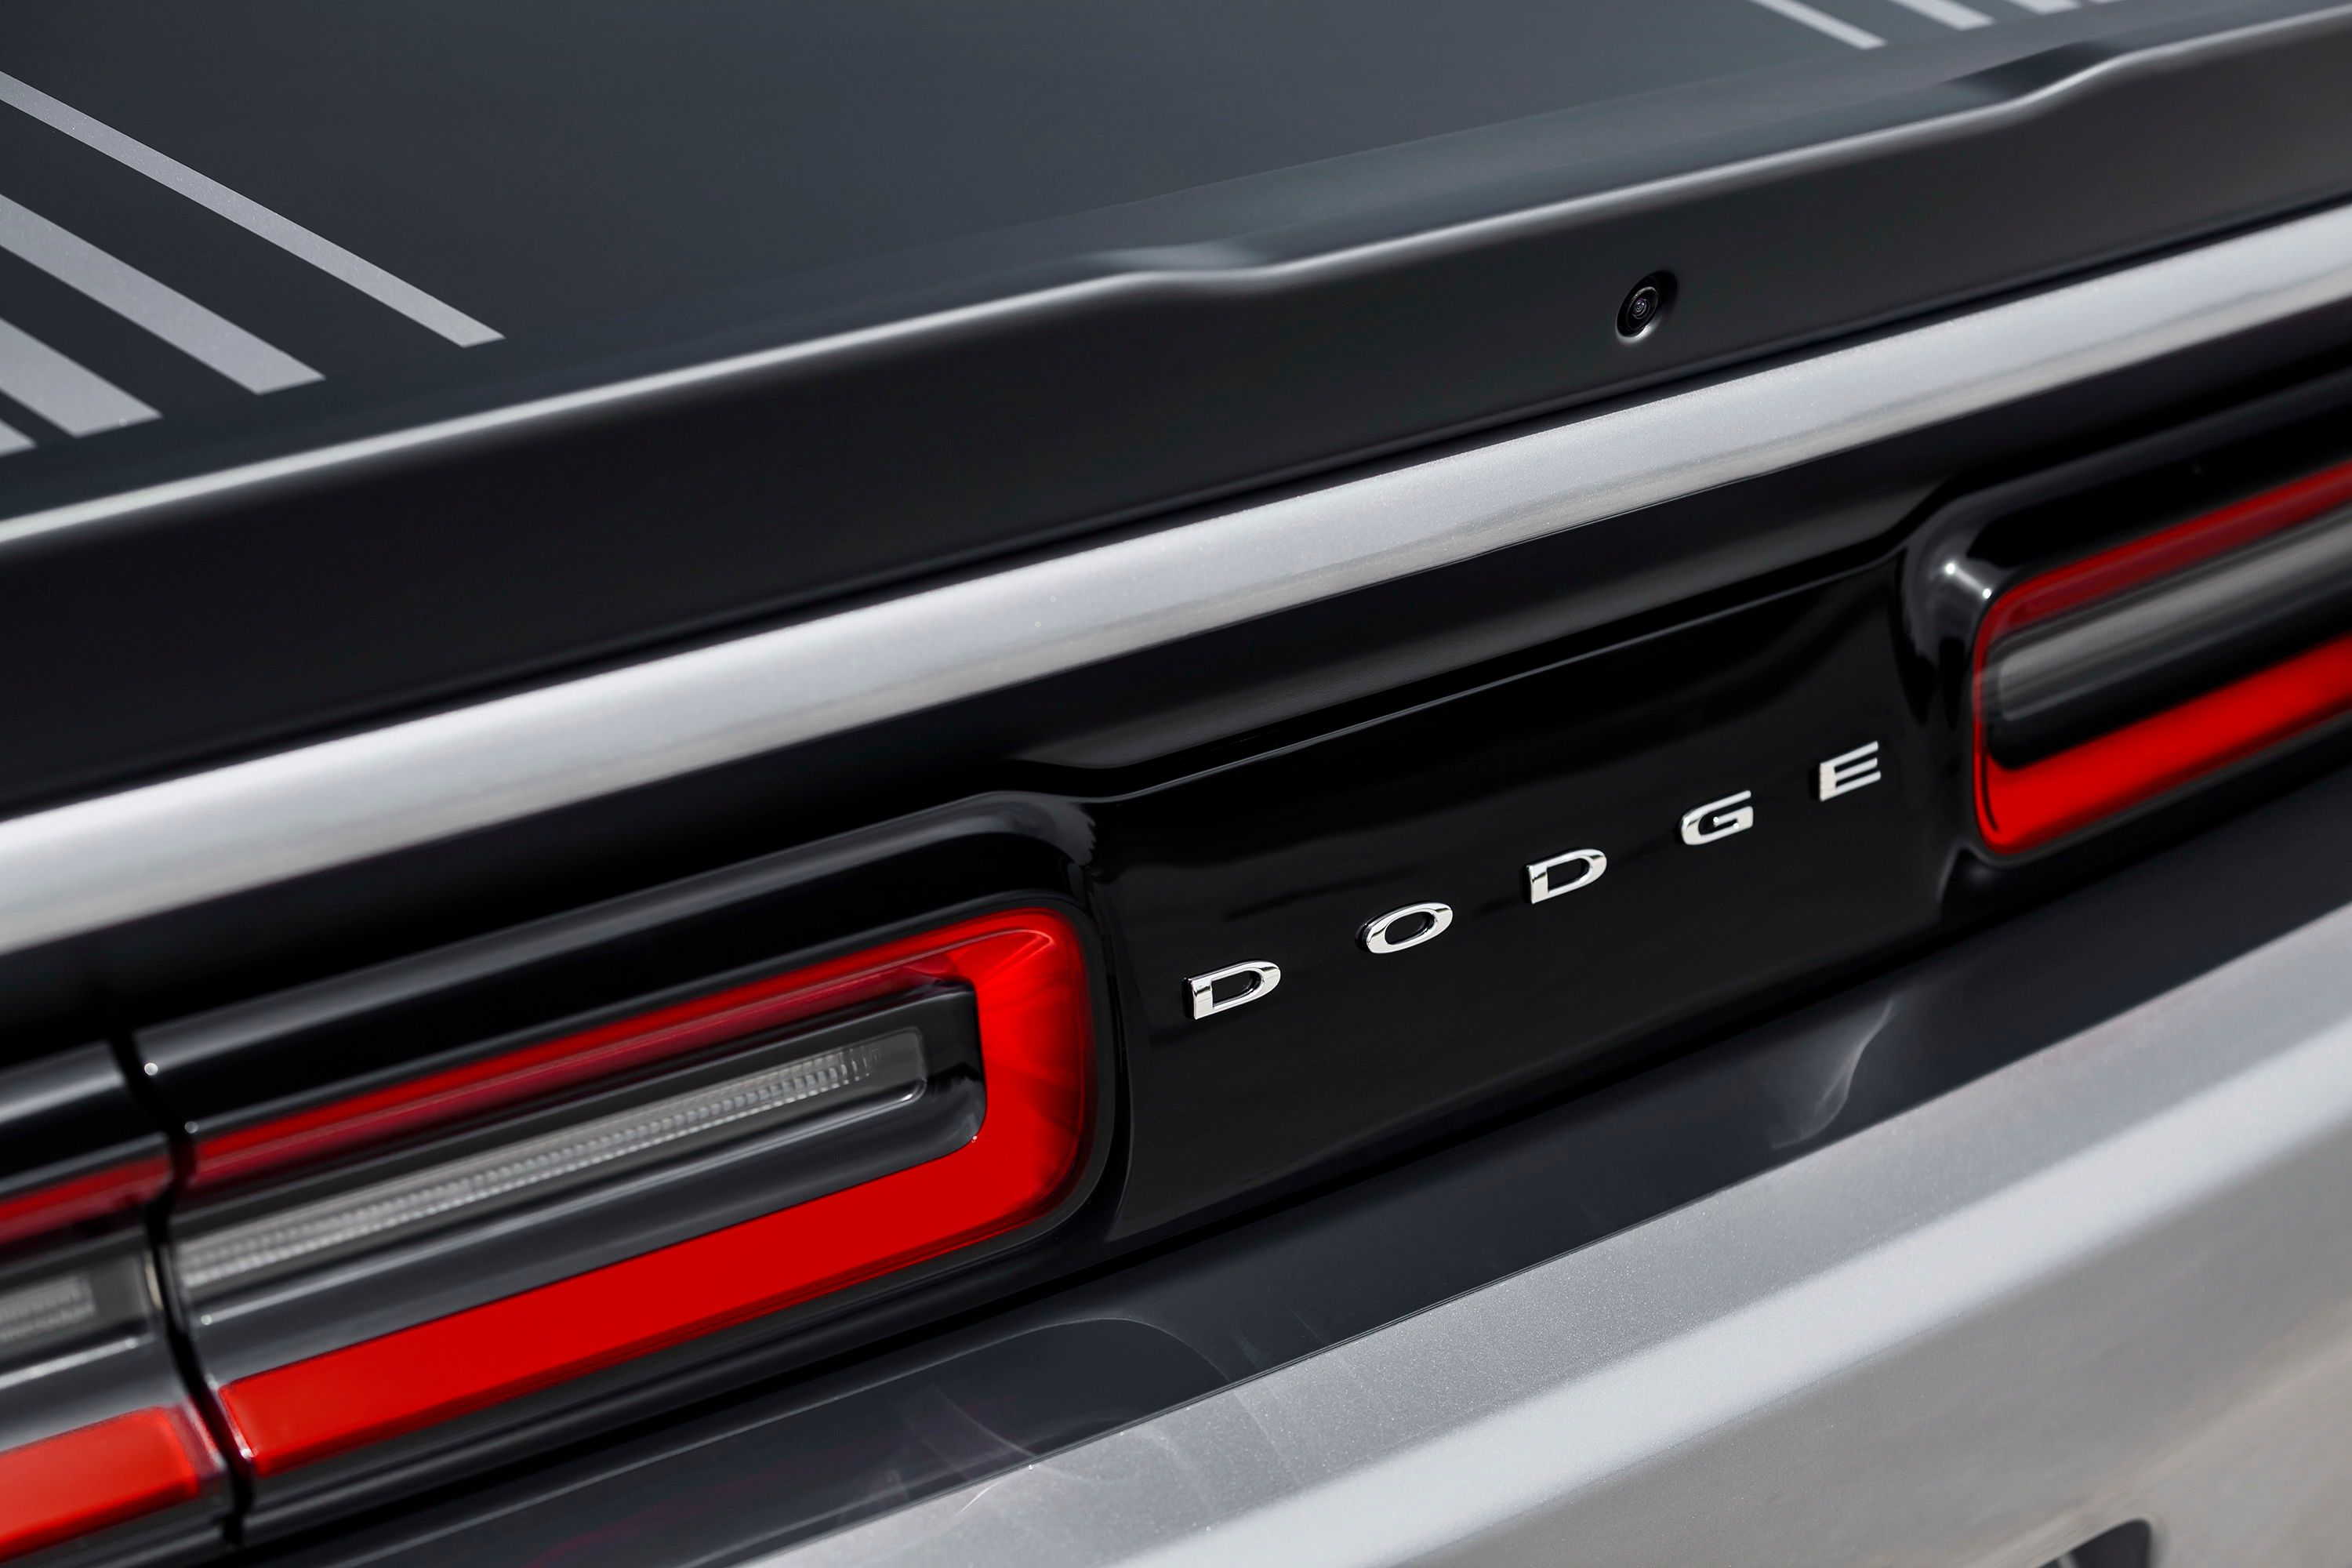 2015 Dodge Challenger 392 HEMI Scat Pack Shaker